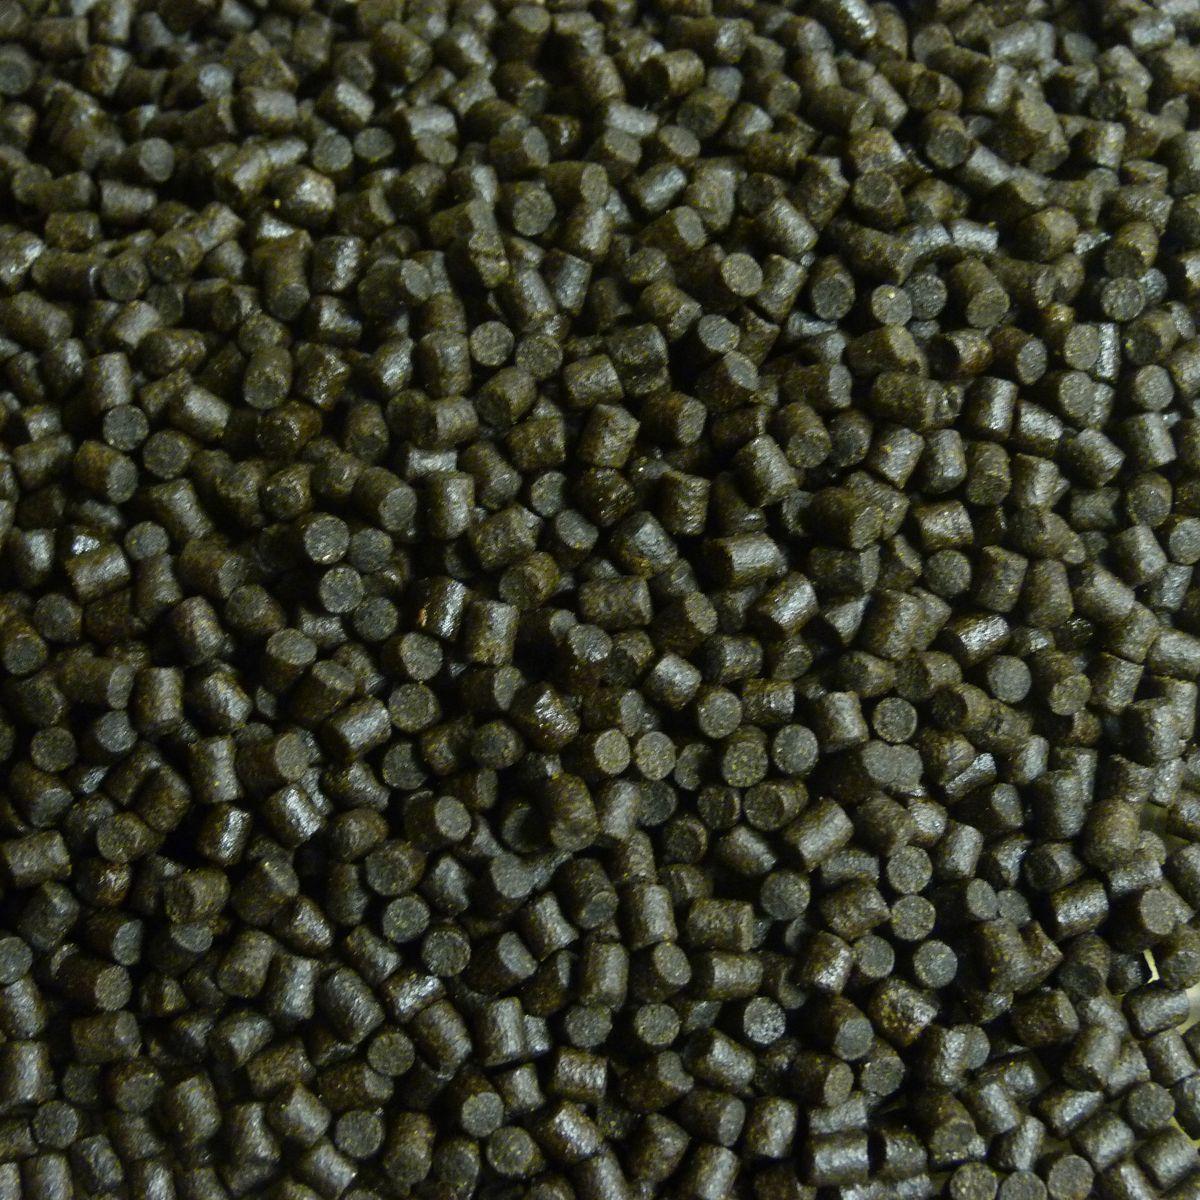 Coppens Halibut pellets | 8 mm